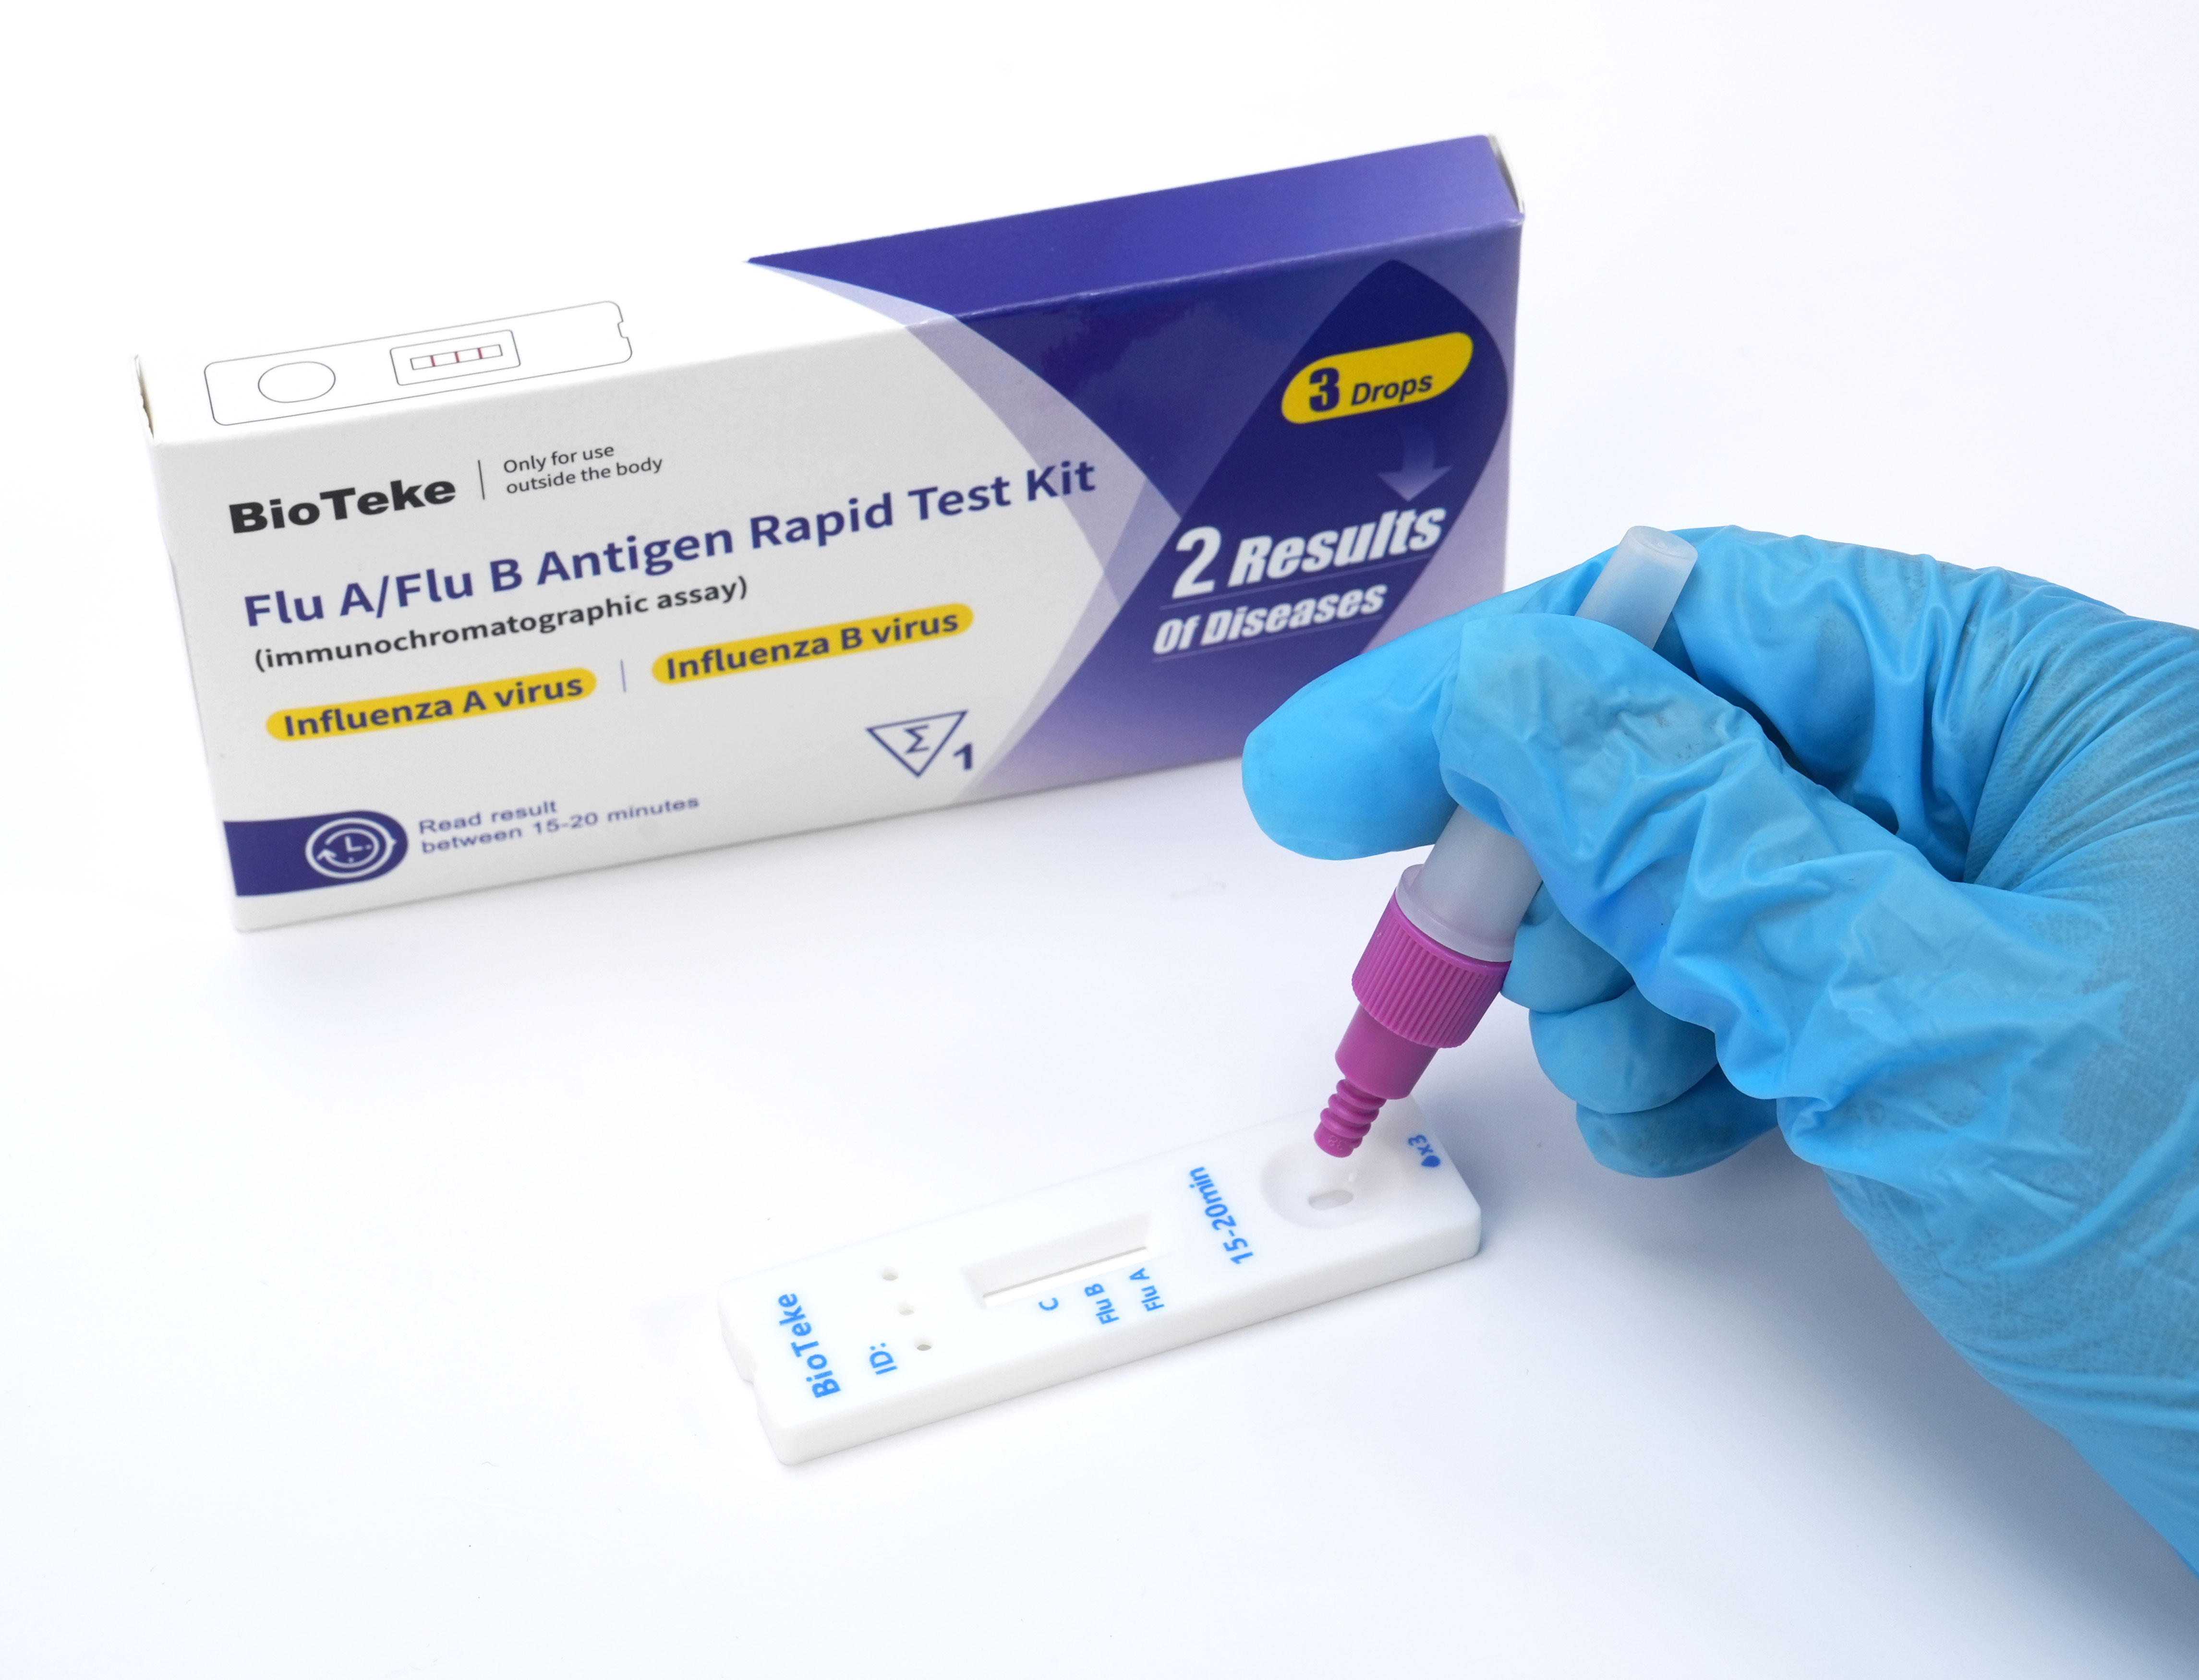 Flu A / Flu B Antigen Rapid Test Kit 